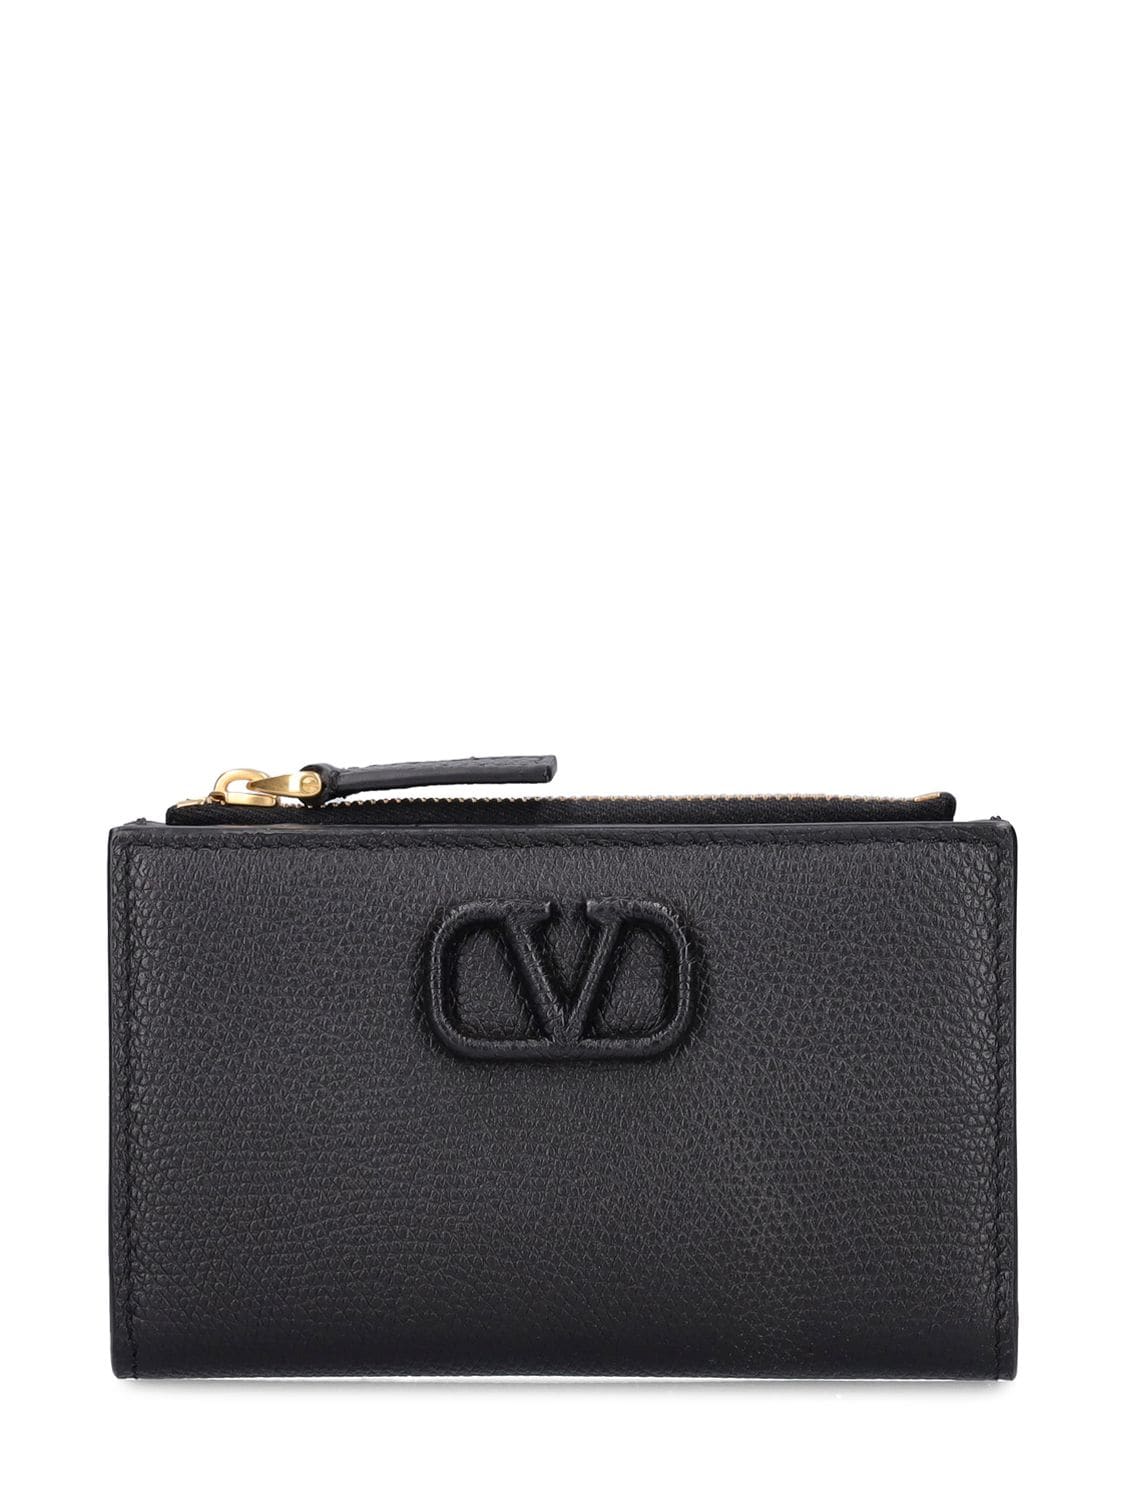 Valentino Garavani Vlogo Leather Wallet In Black